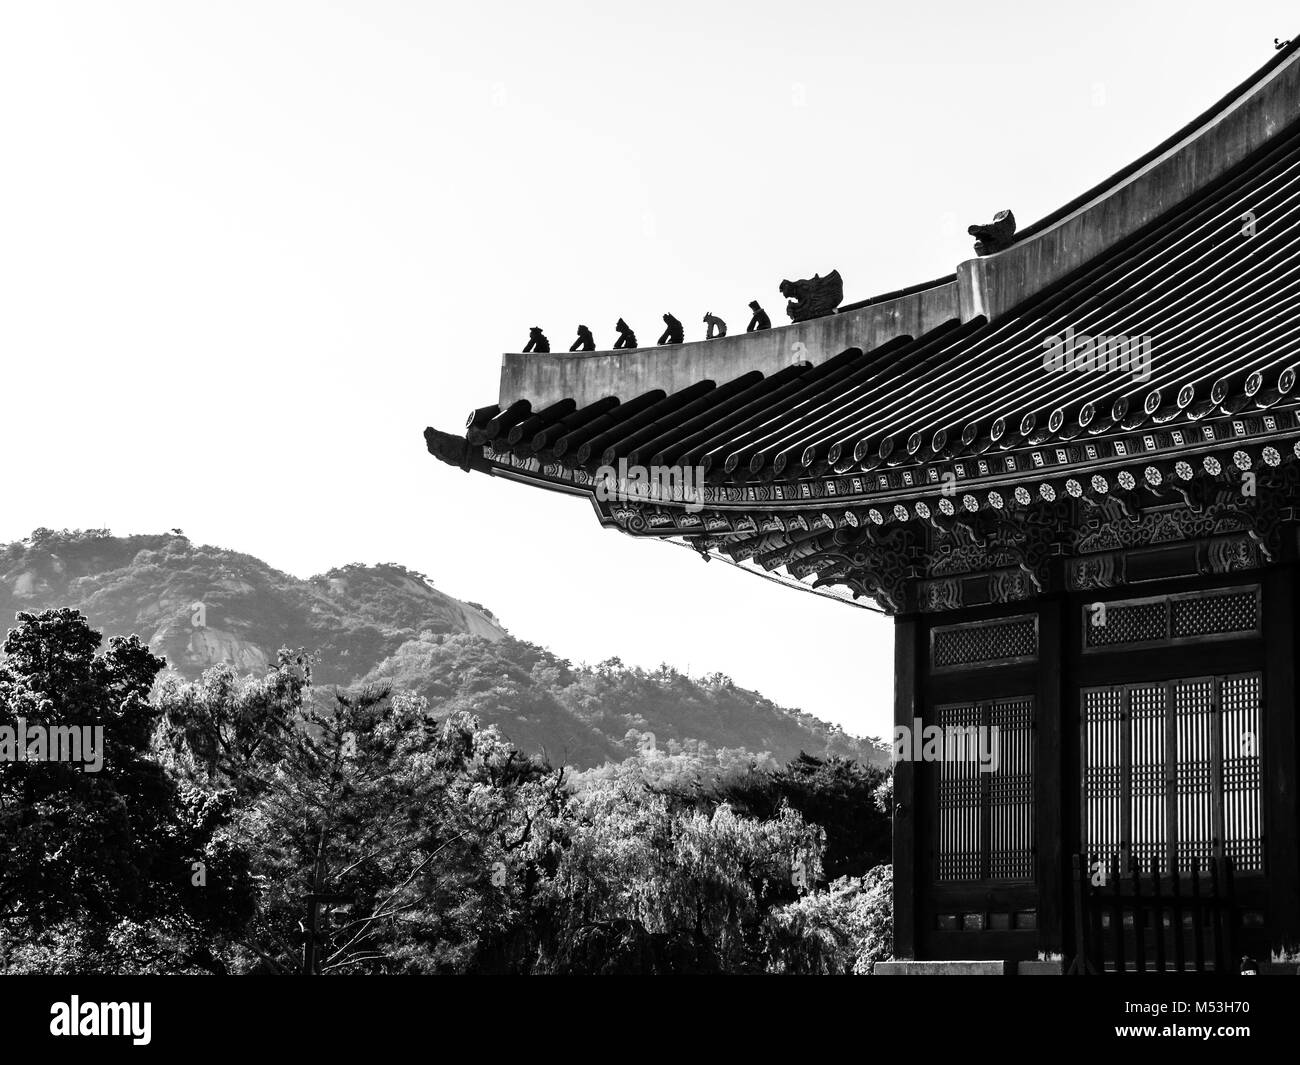 Coreano tradizionale tetto. Immagine in bianco e nero. Il Palazzo Gyeongbokgung. Seoul, Corea del Sud Foto Stock